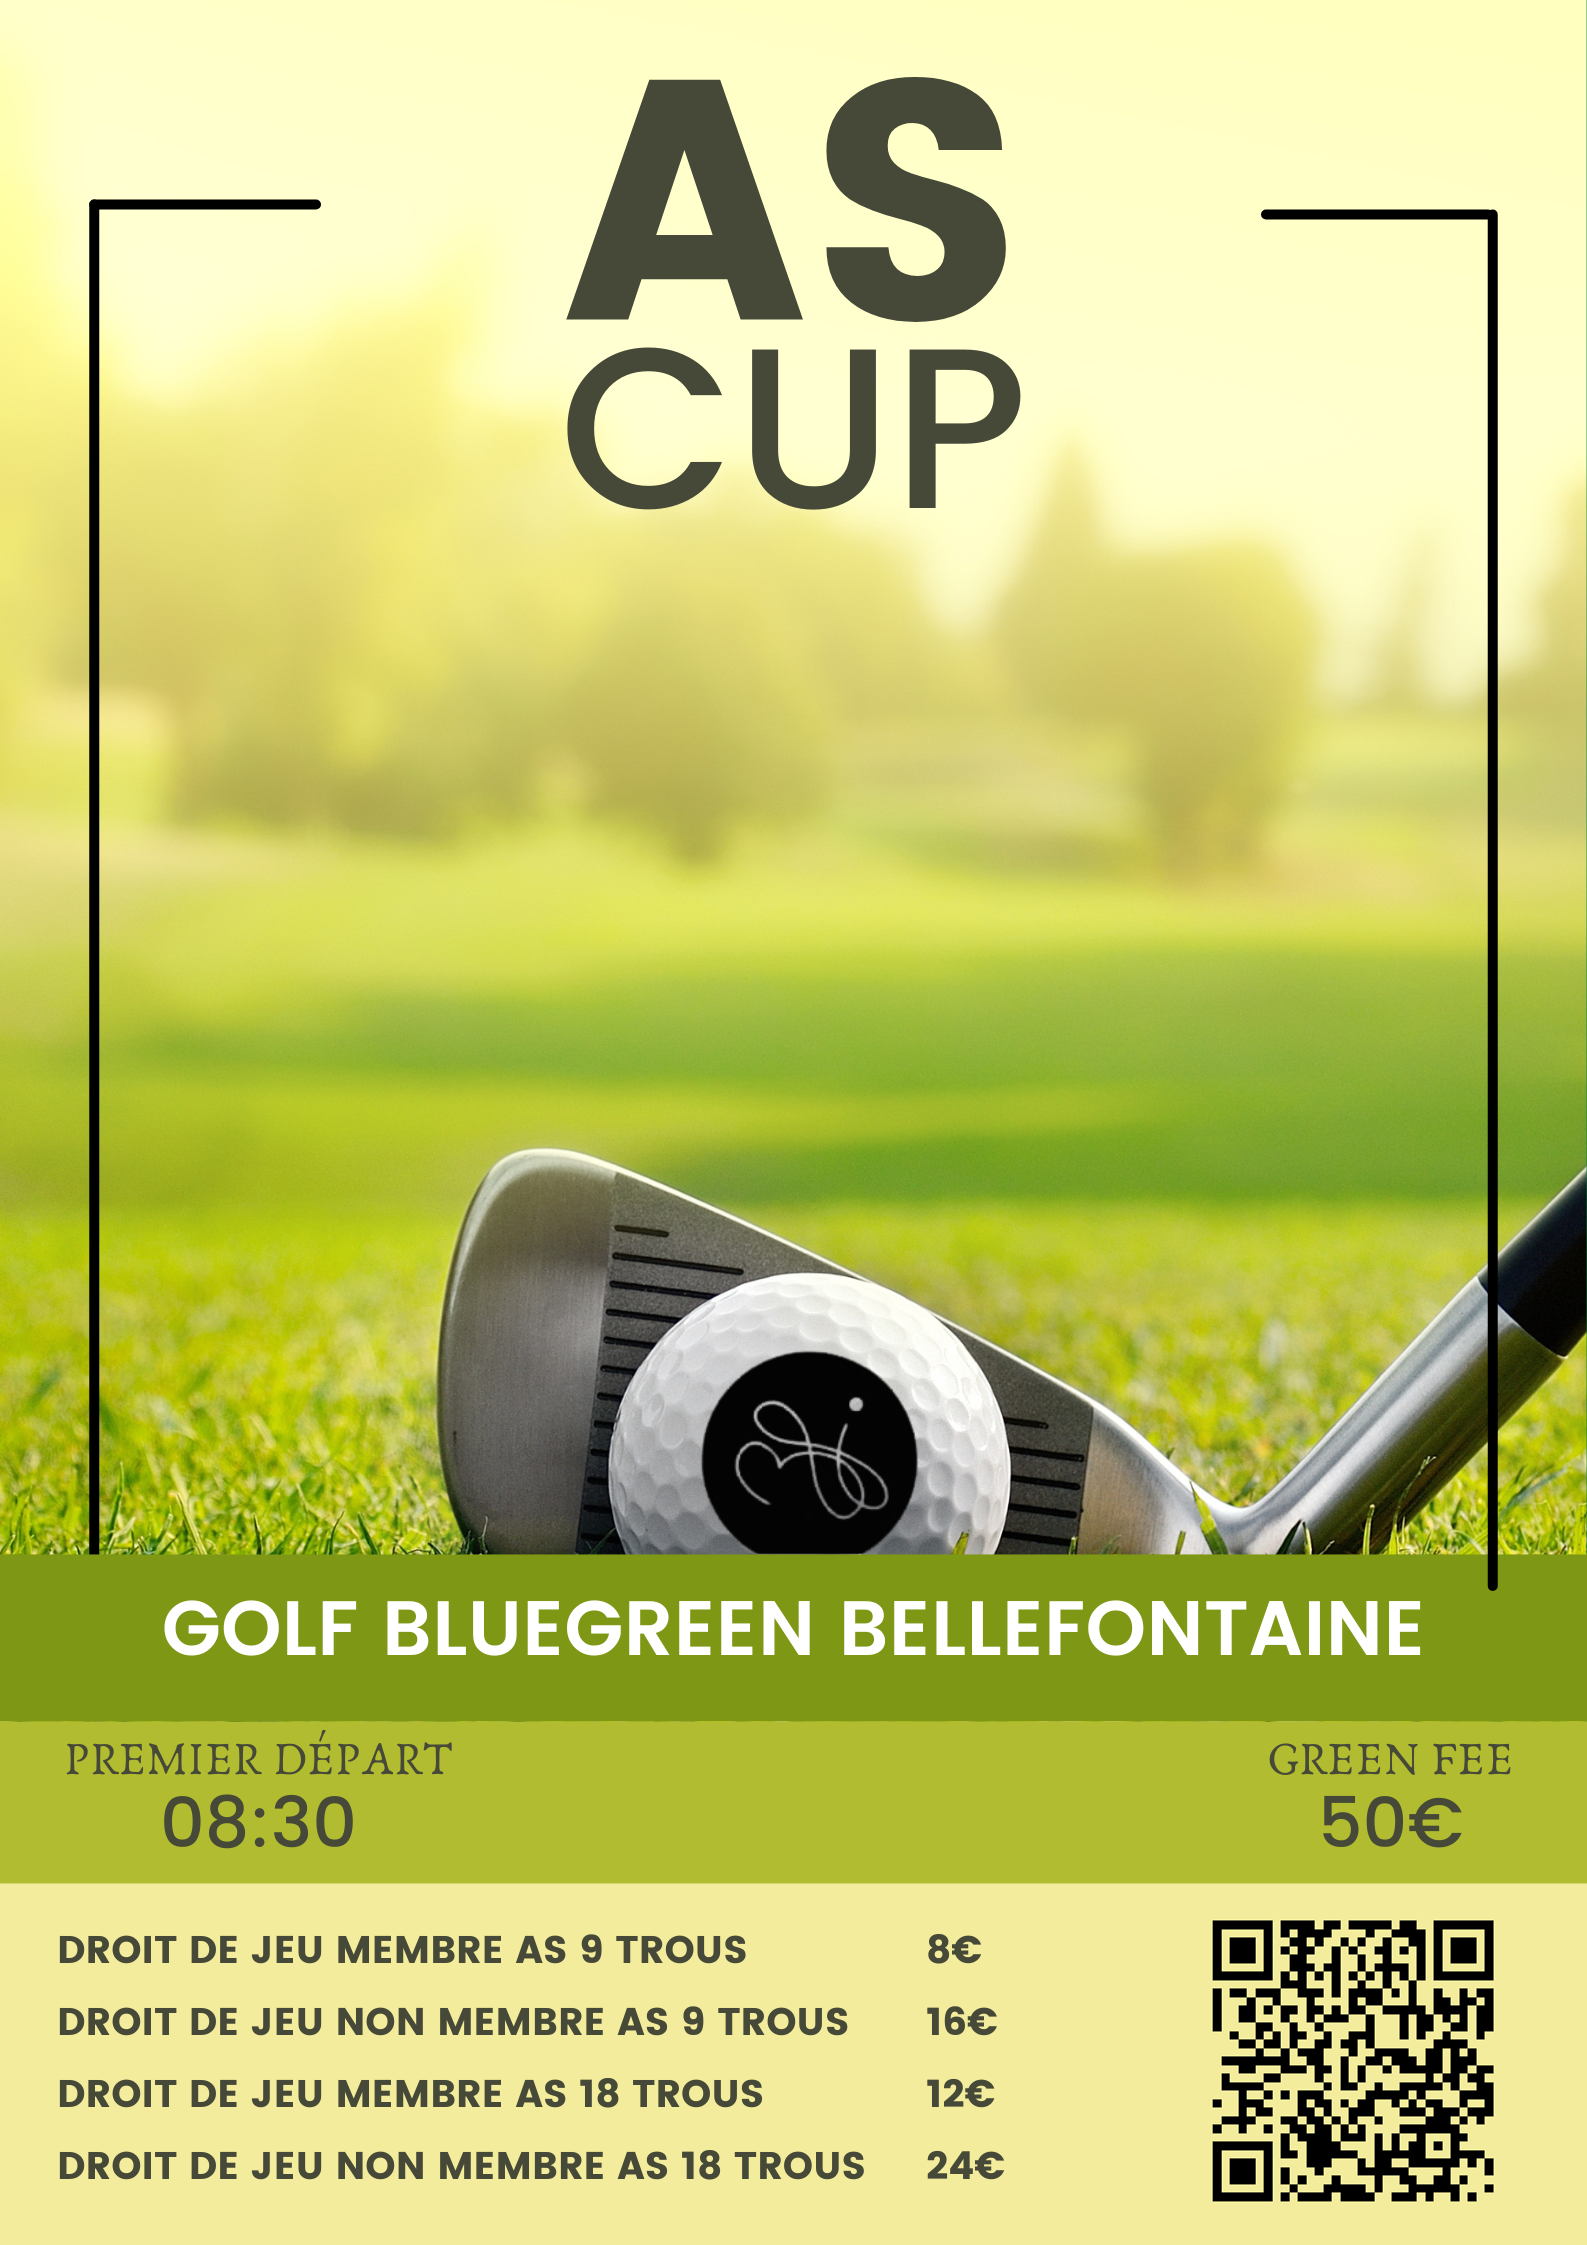 Golf Bluegreen Bellefontaine